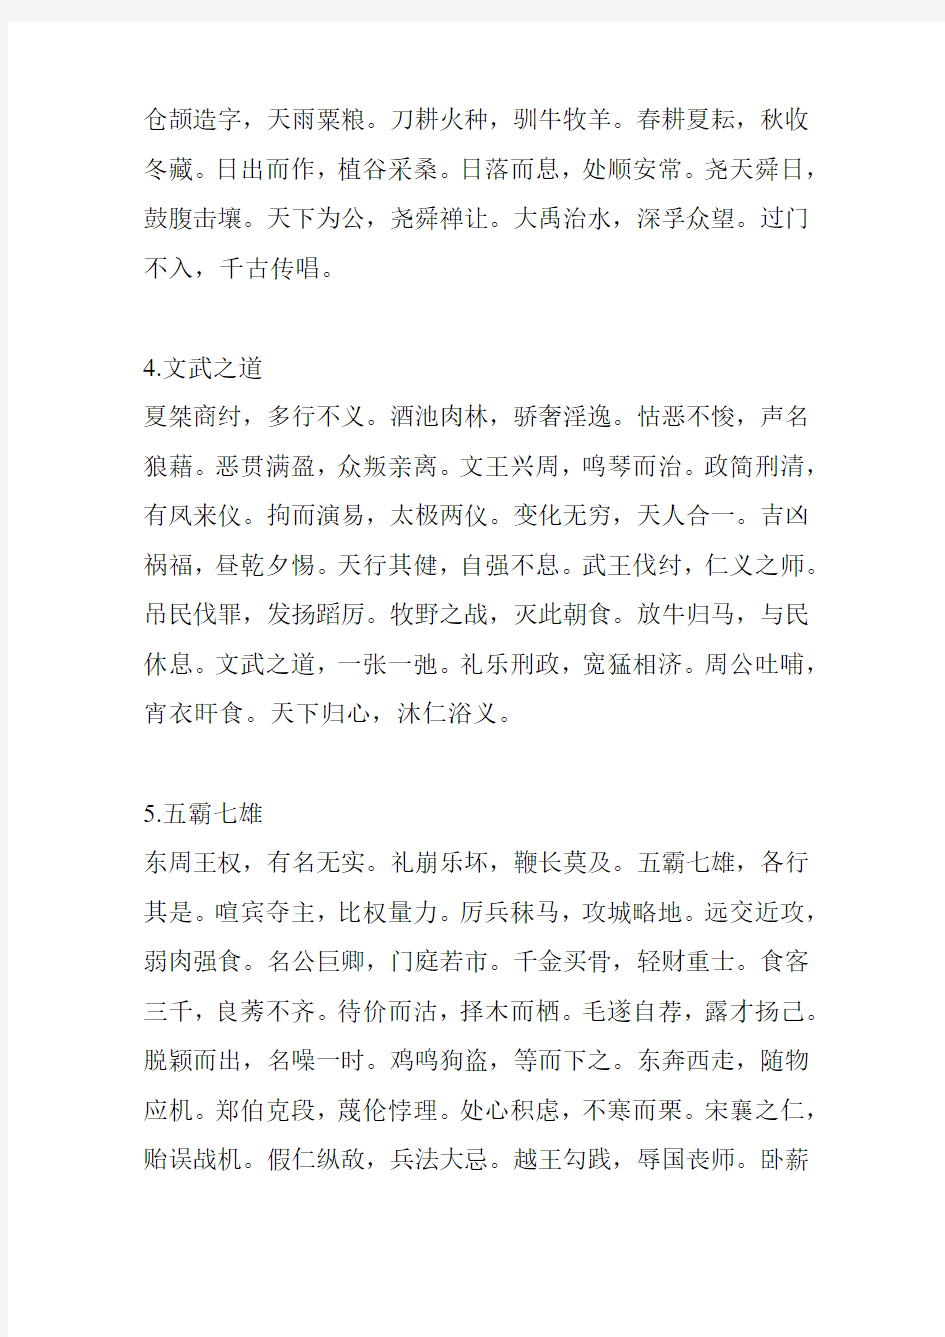 一篇精彩绝伦的成语千句文_让你读懂中国历史!